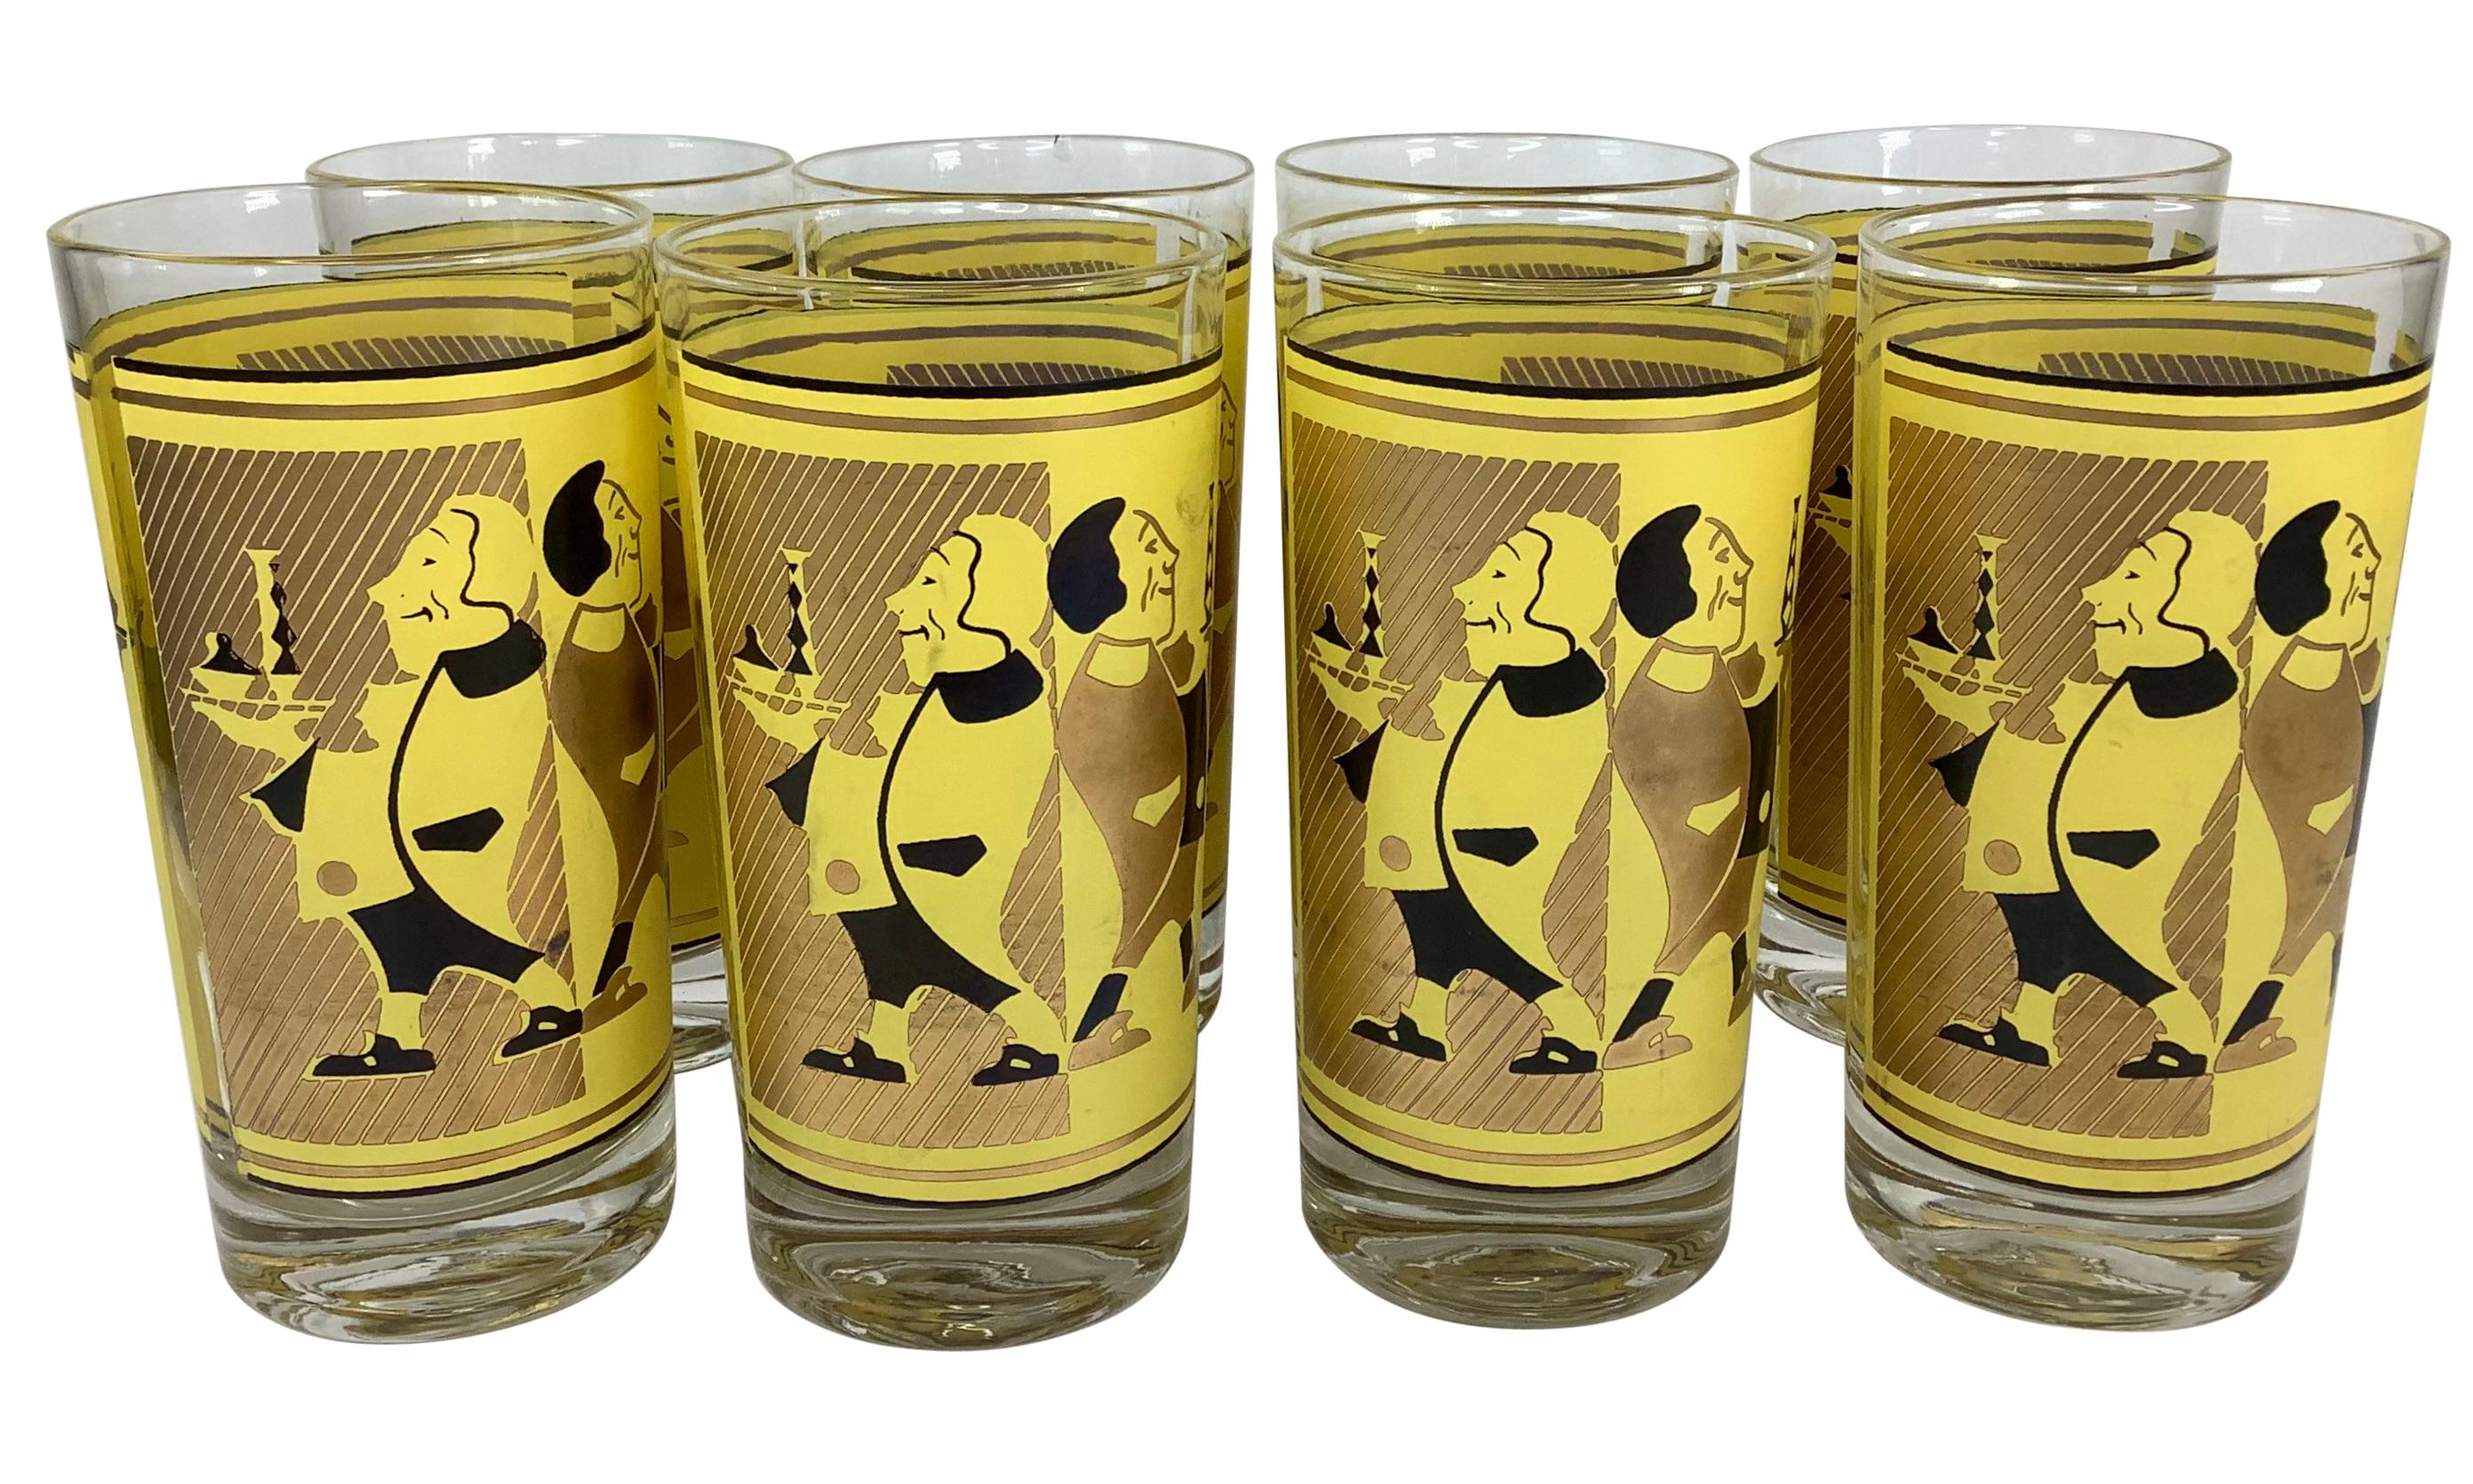 Lot de 8 verres highball vintage fantaisistes avec des serveurs servant des boissons vêtus de tenues jaunes, dorées et noires. Les verres mesurent 5 1/2